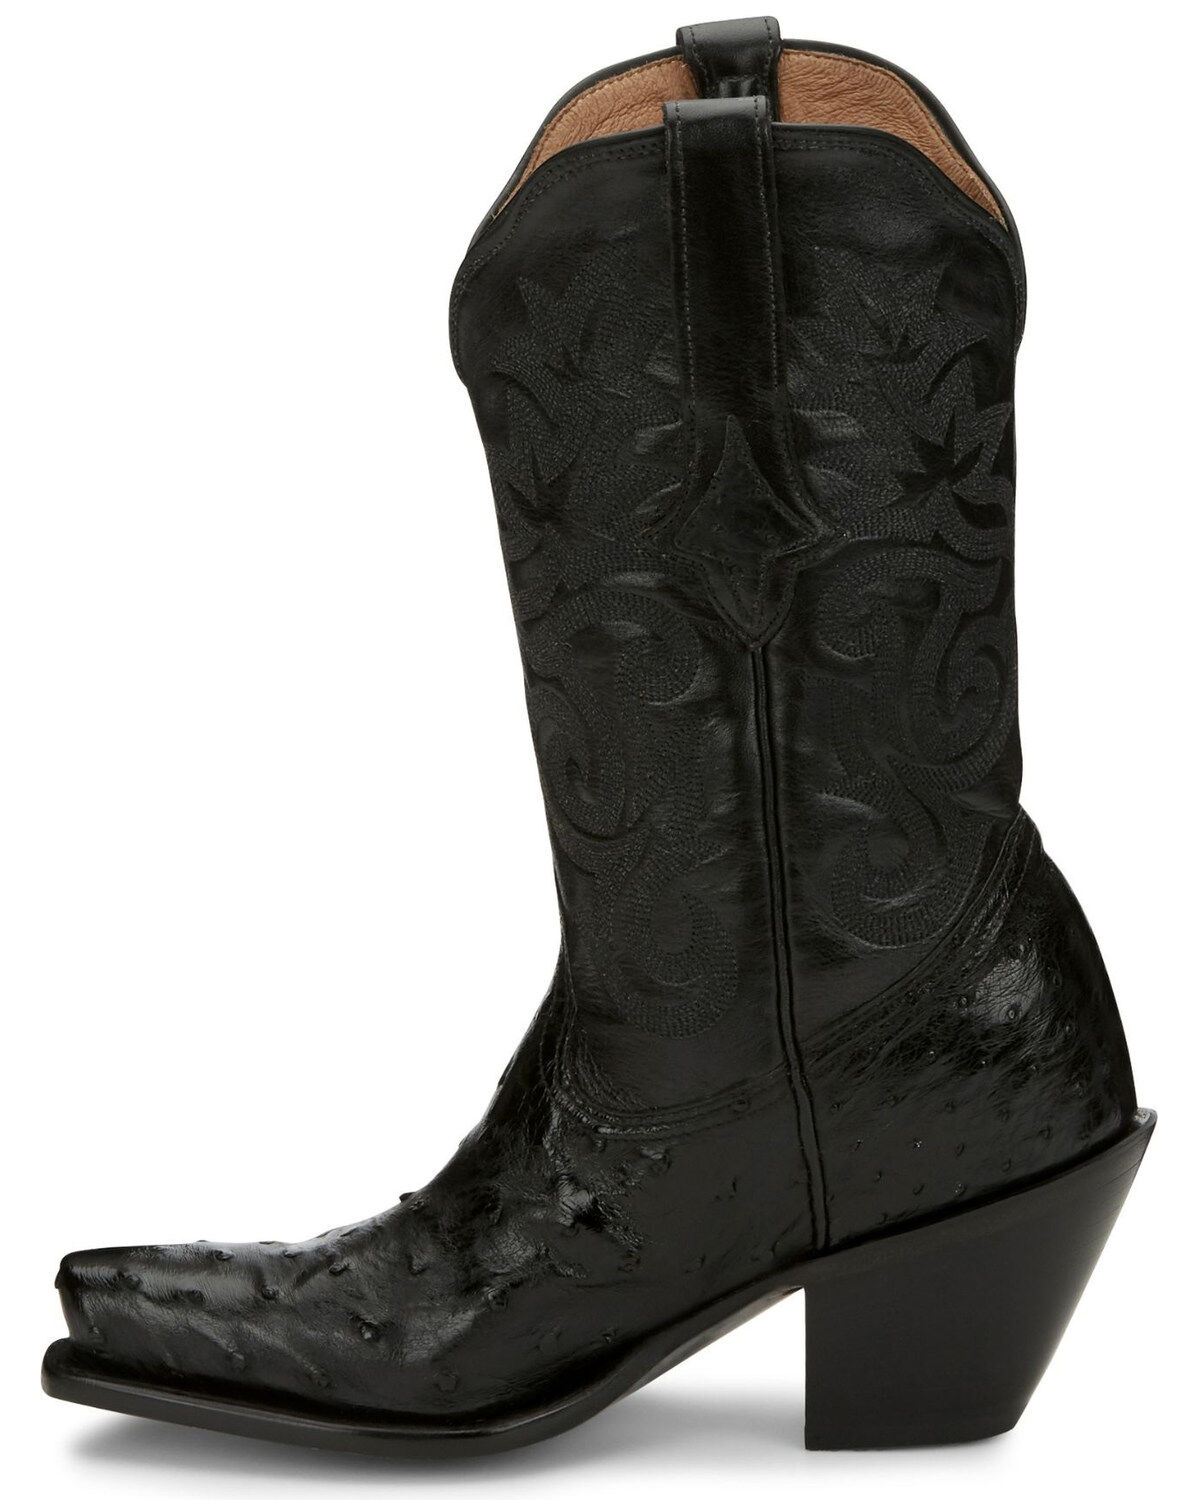 tony lama women's black boots